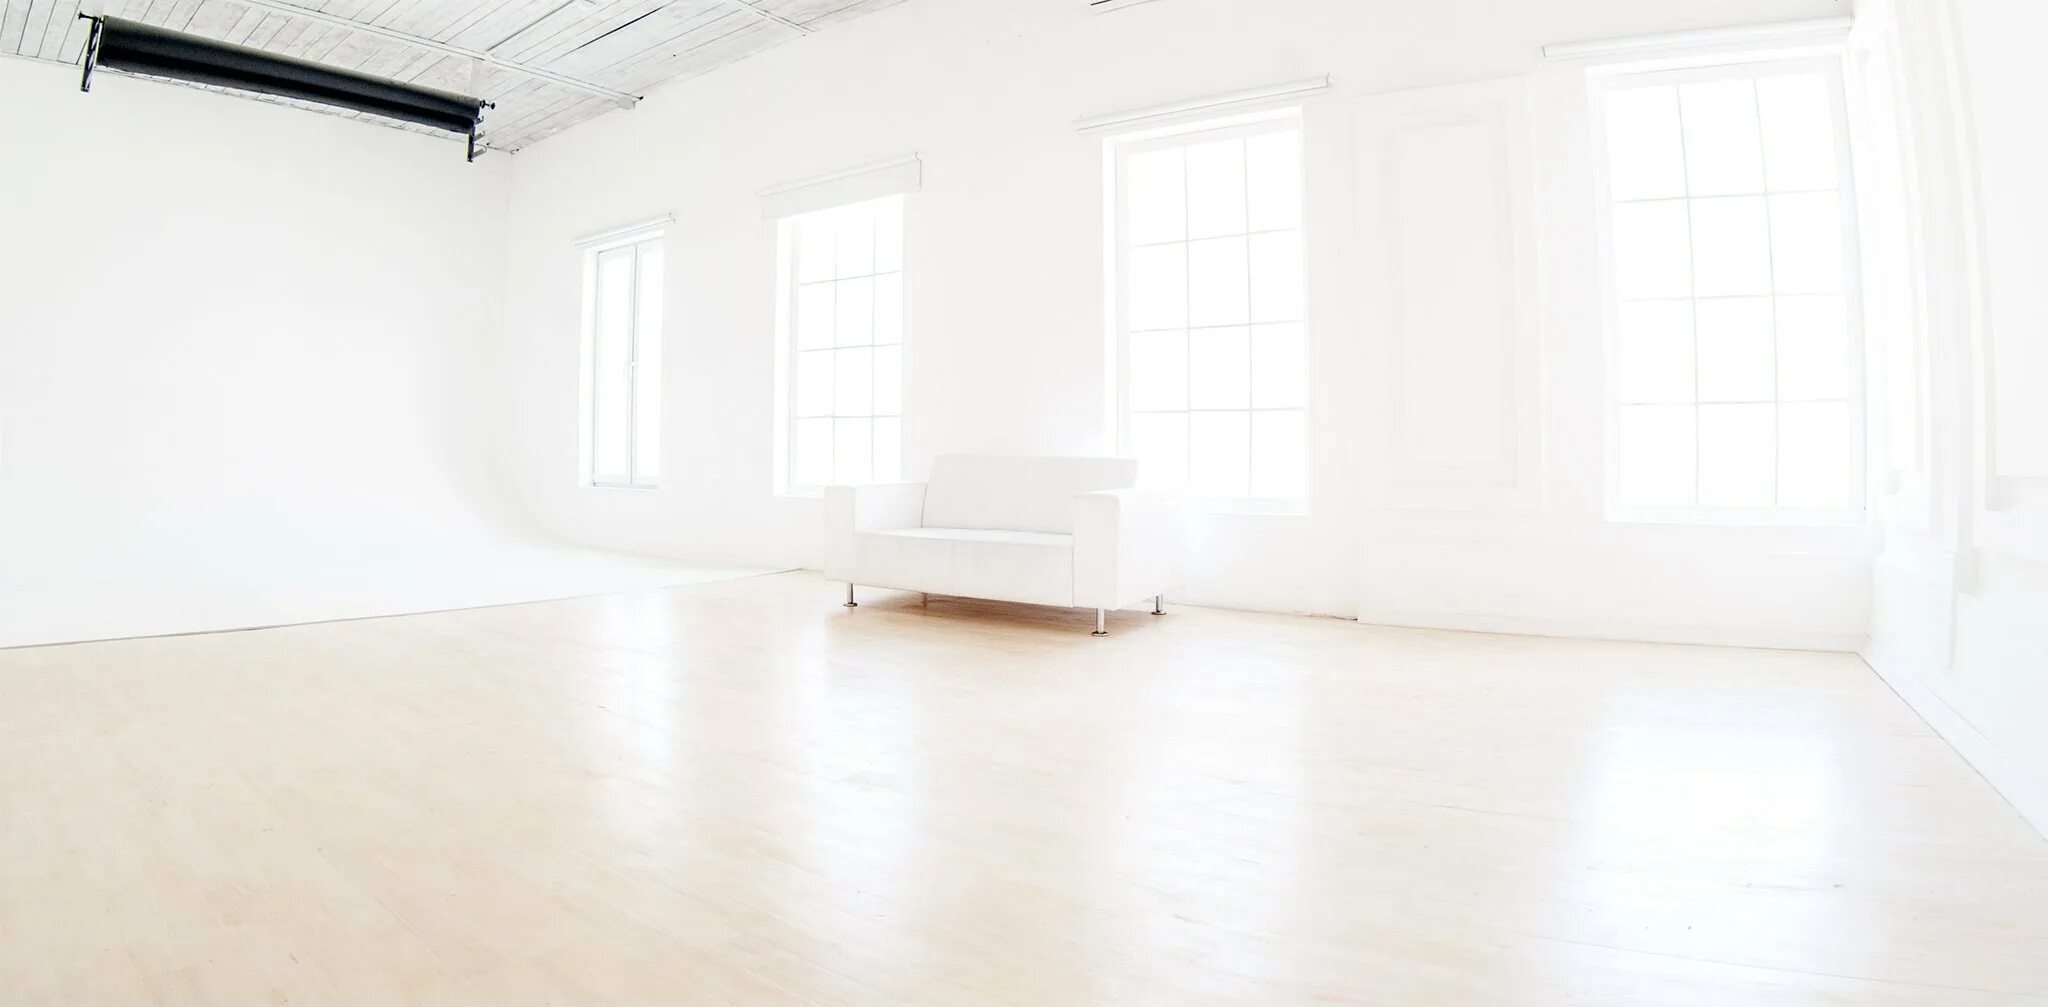 Картинки белого пола. Интерьер пустой комнаты. Пустая комната. Помещение с белыми стенами. Интерьер без мебели.